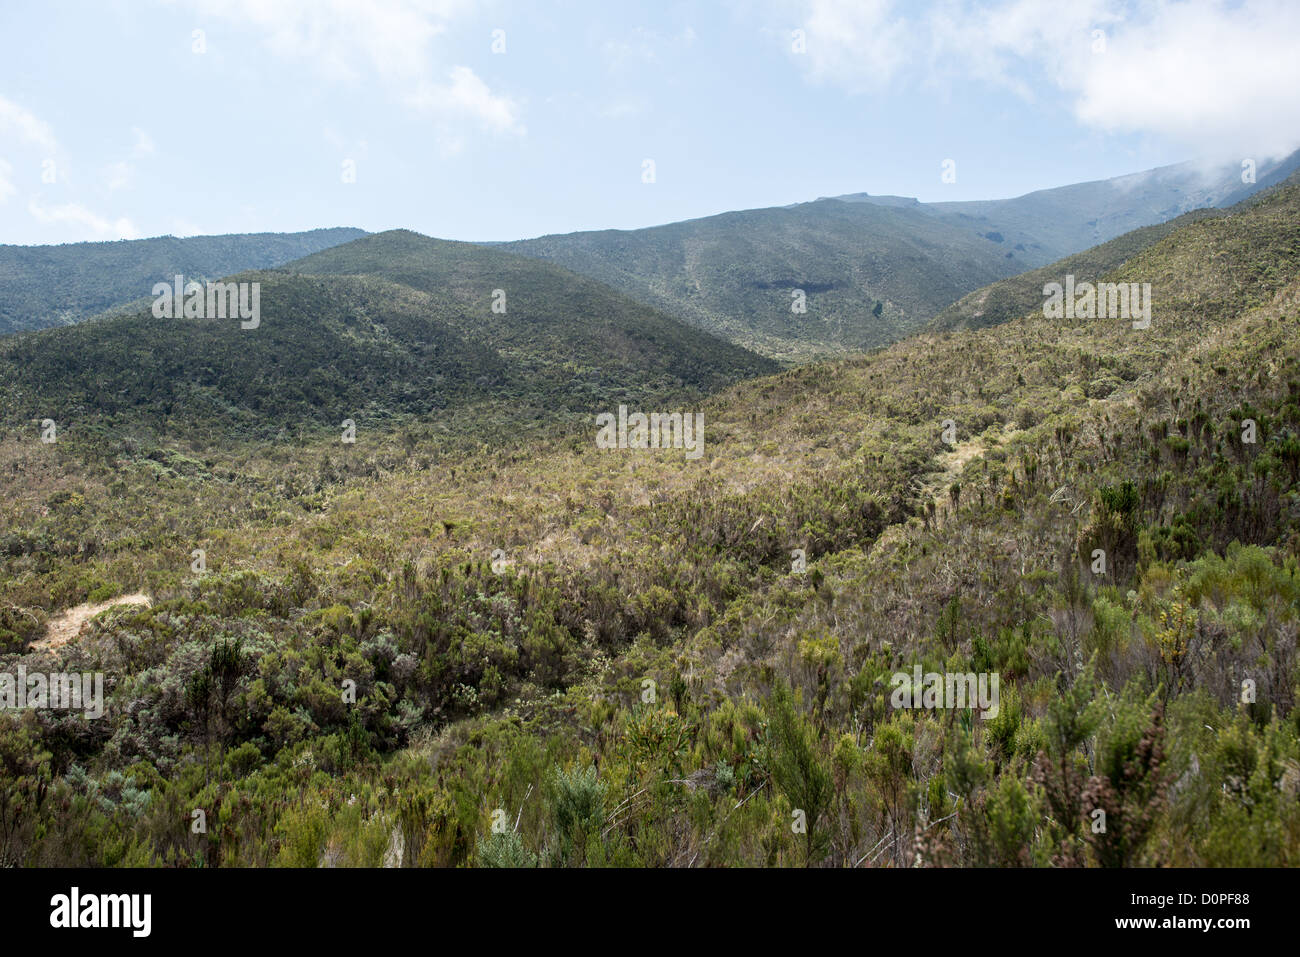 MT KILIMANJARO, Tansania - Die Landschaft der Heide Zone auf dem Kilimandscharo Lemosho Trail. Stockfoto